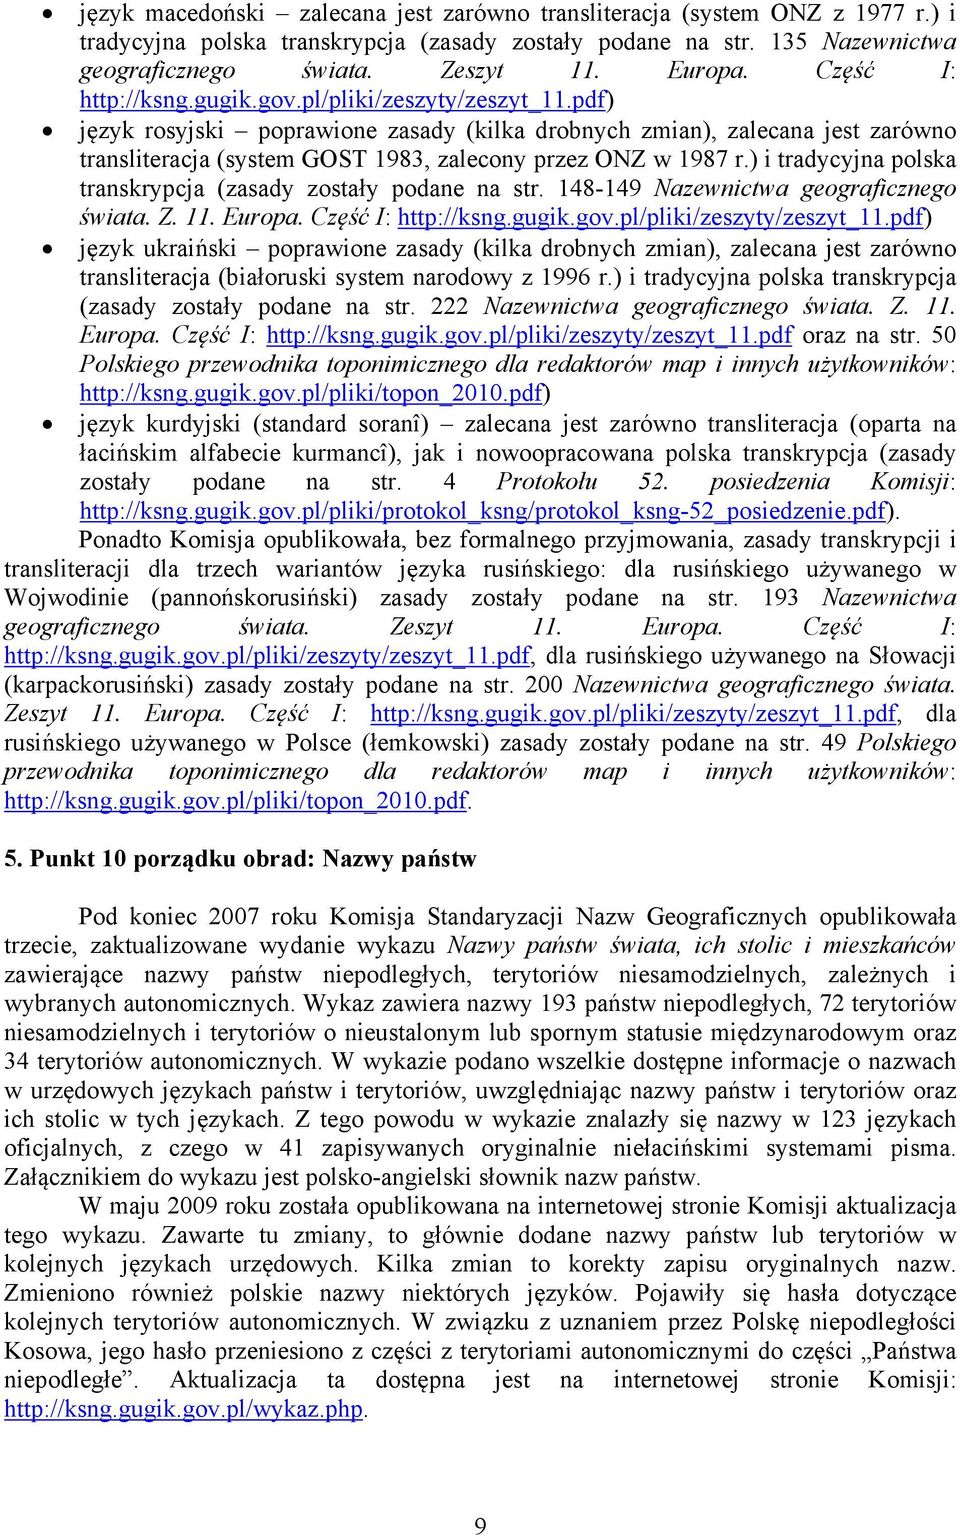 pdf) język rosyjski poprawione zasady (kilka drobnych zmian), zalecana jest zarówno transliteracja (system GOST 1983, zalecony przez ONZ w 1987 r.